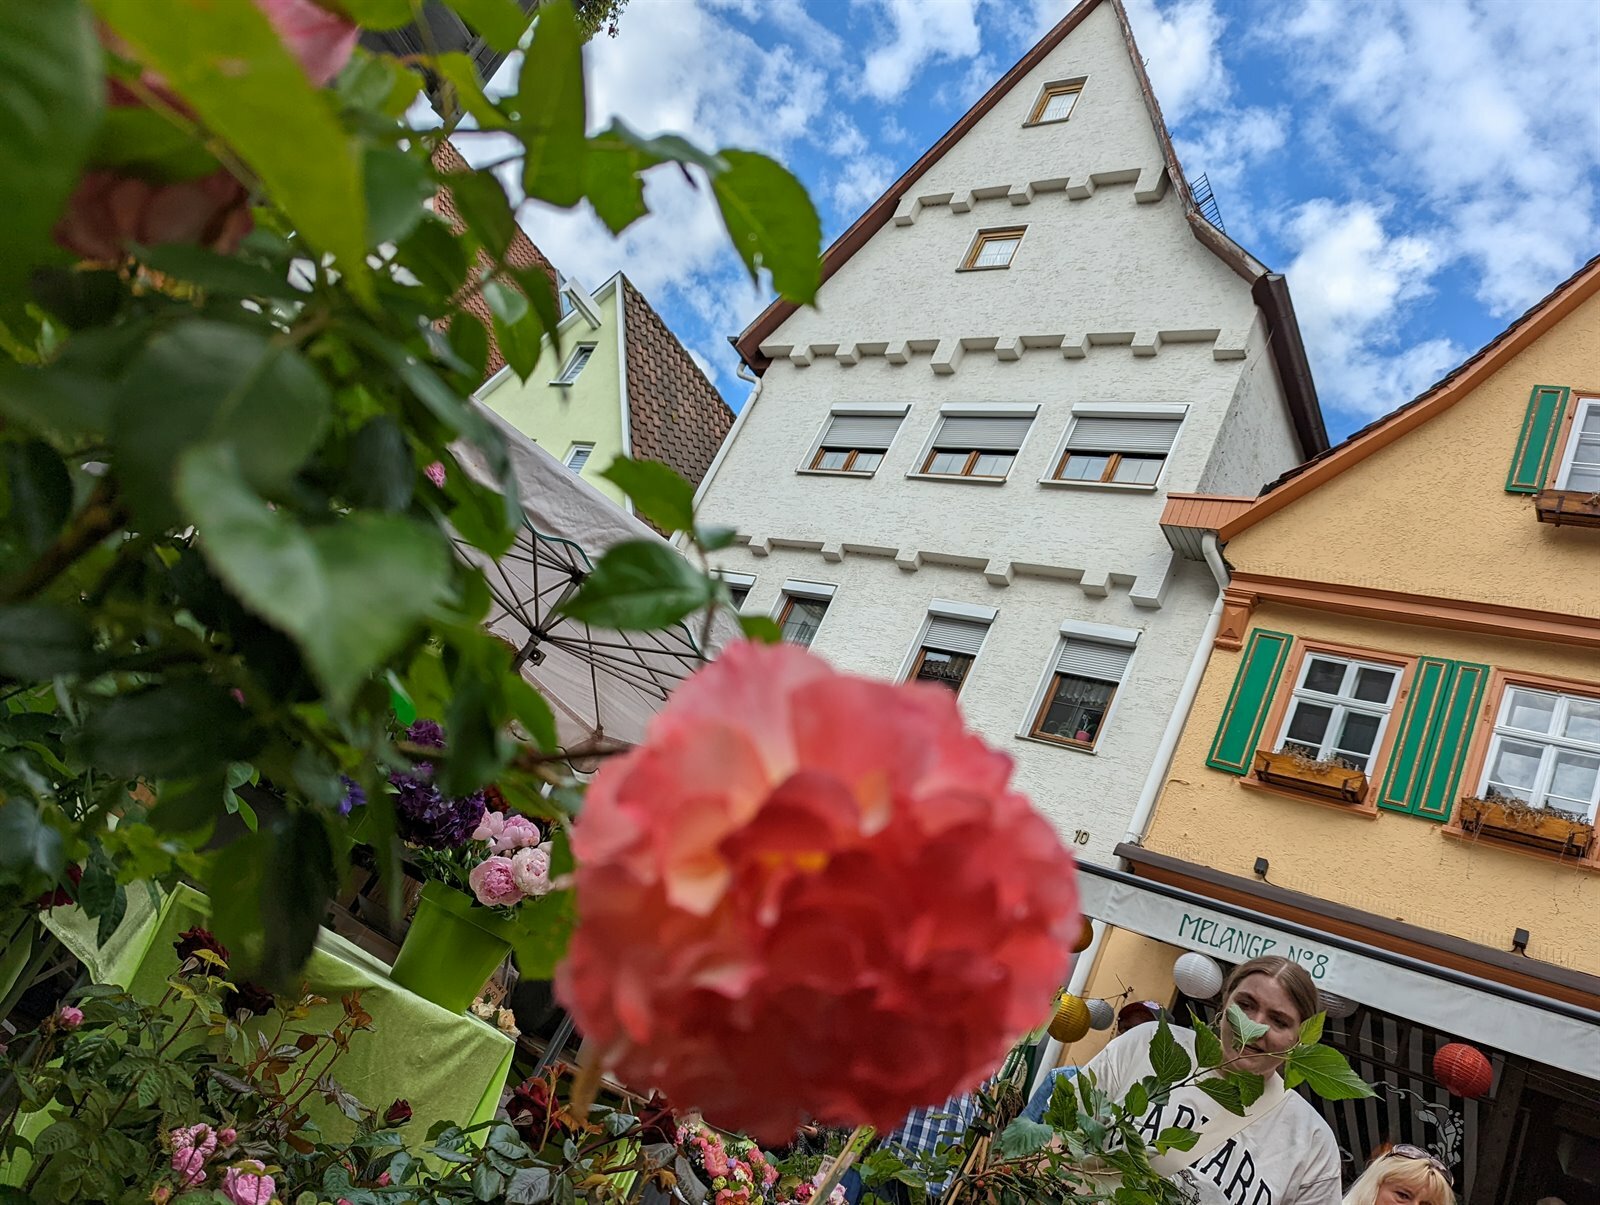 Der Heidenheimer Rosenmarkt: Ein Traum von Blumen und alt-städtischer Romantik. | Foto: Florian Wagner